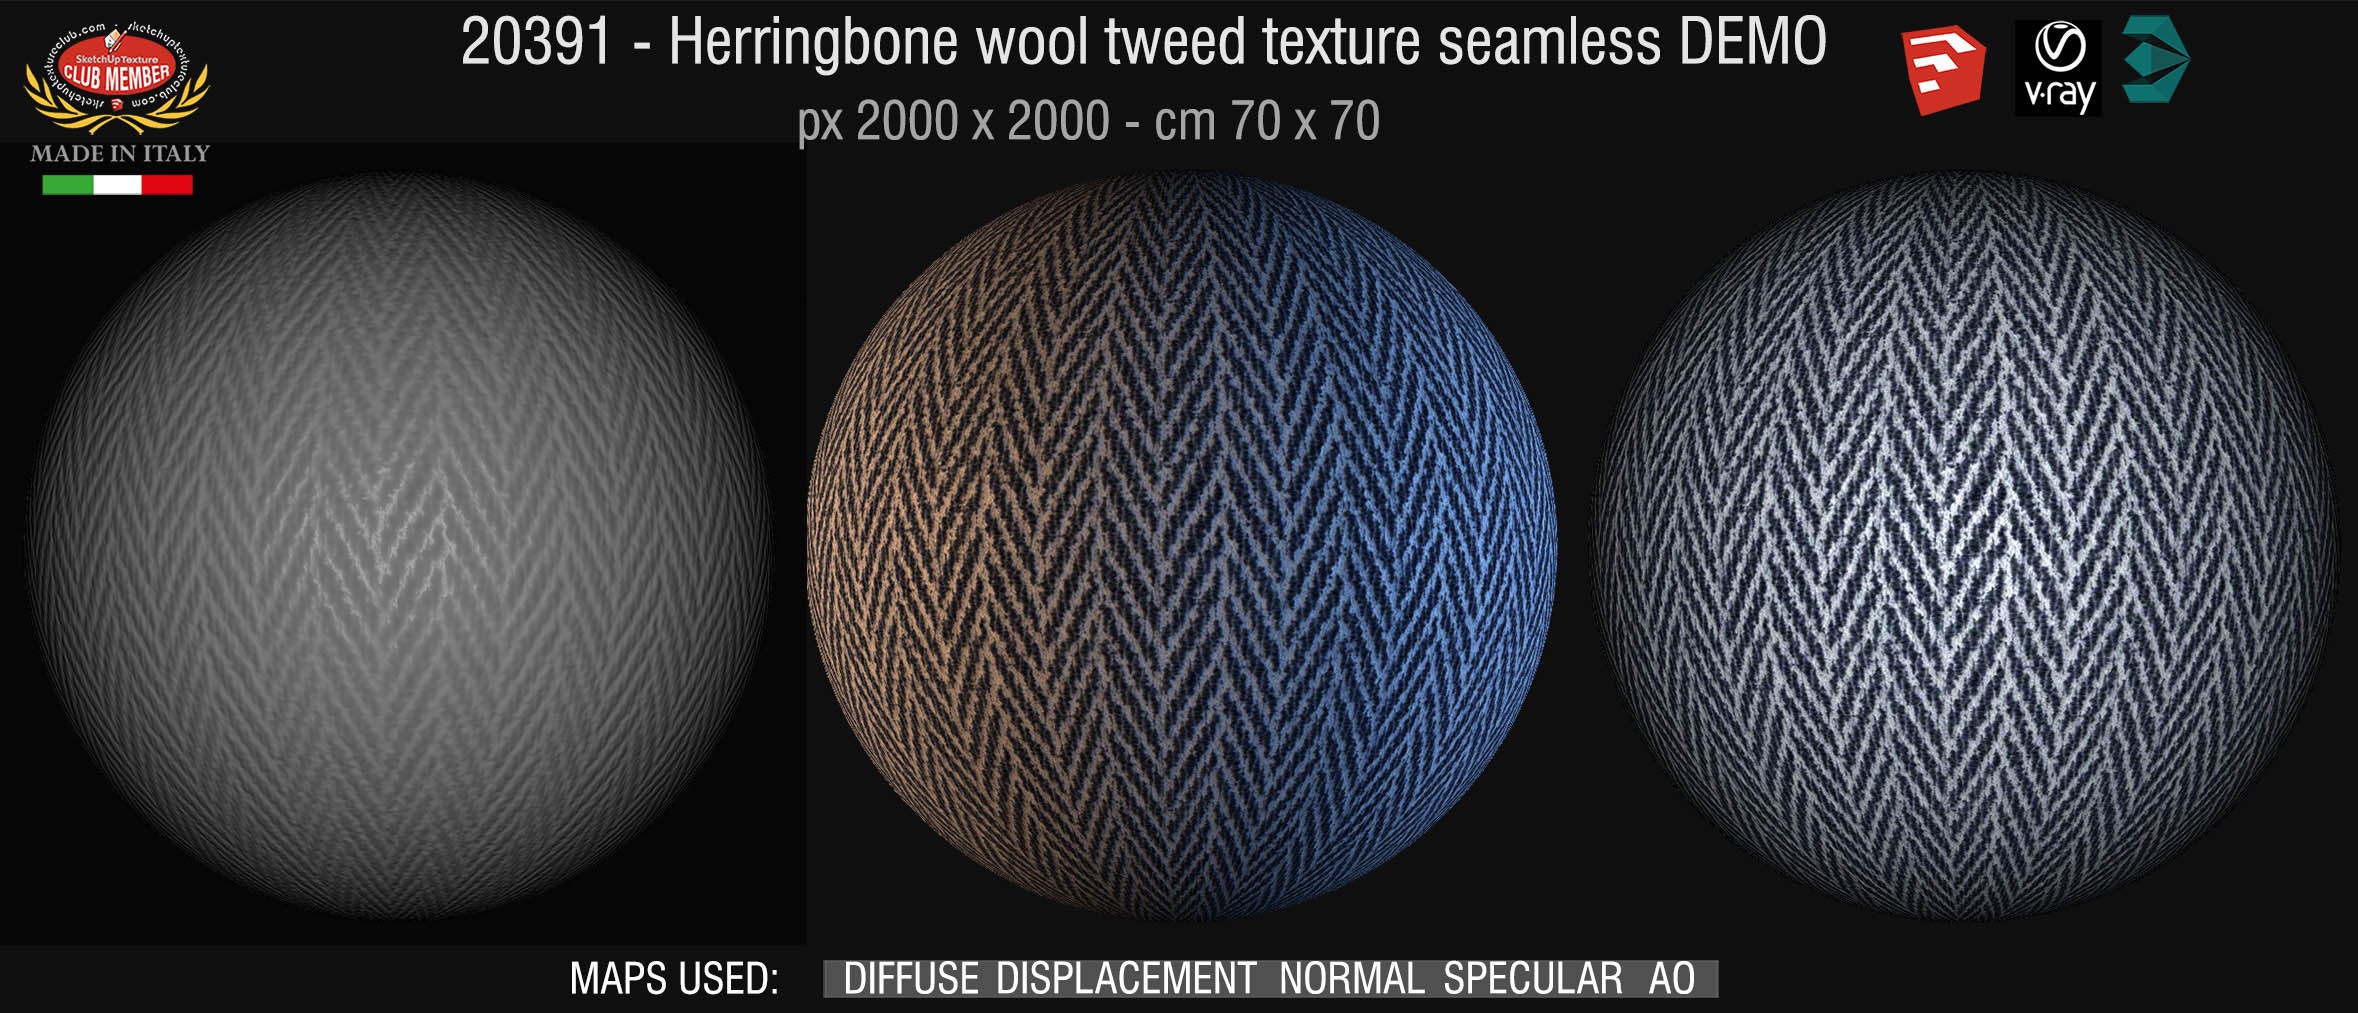 20391 Herringbone wool tweed texture seamless + maps DEMO